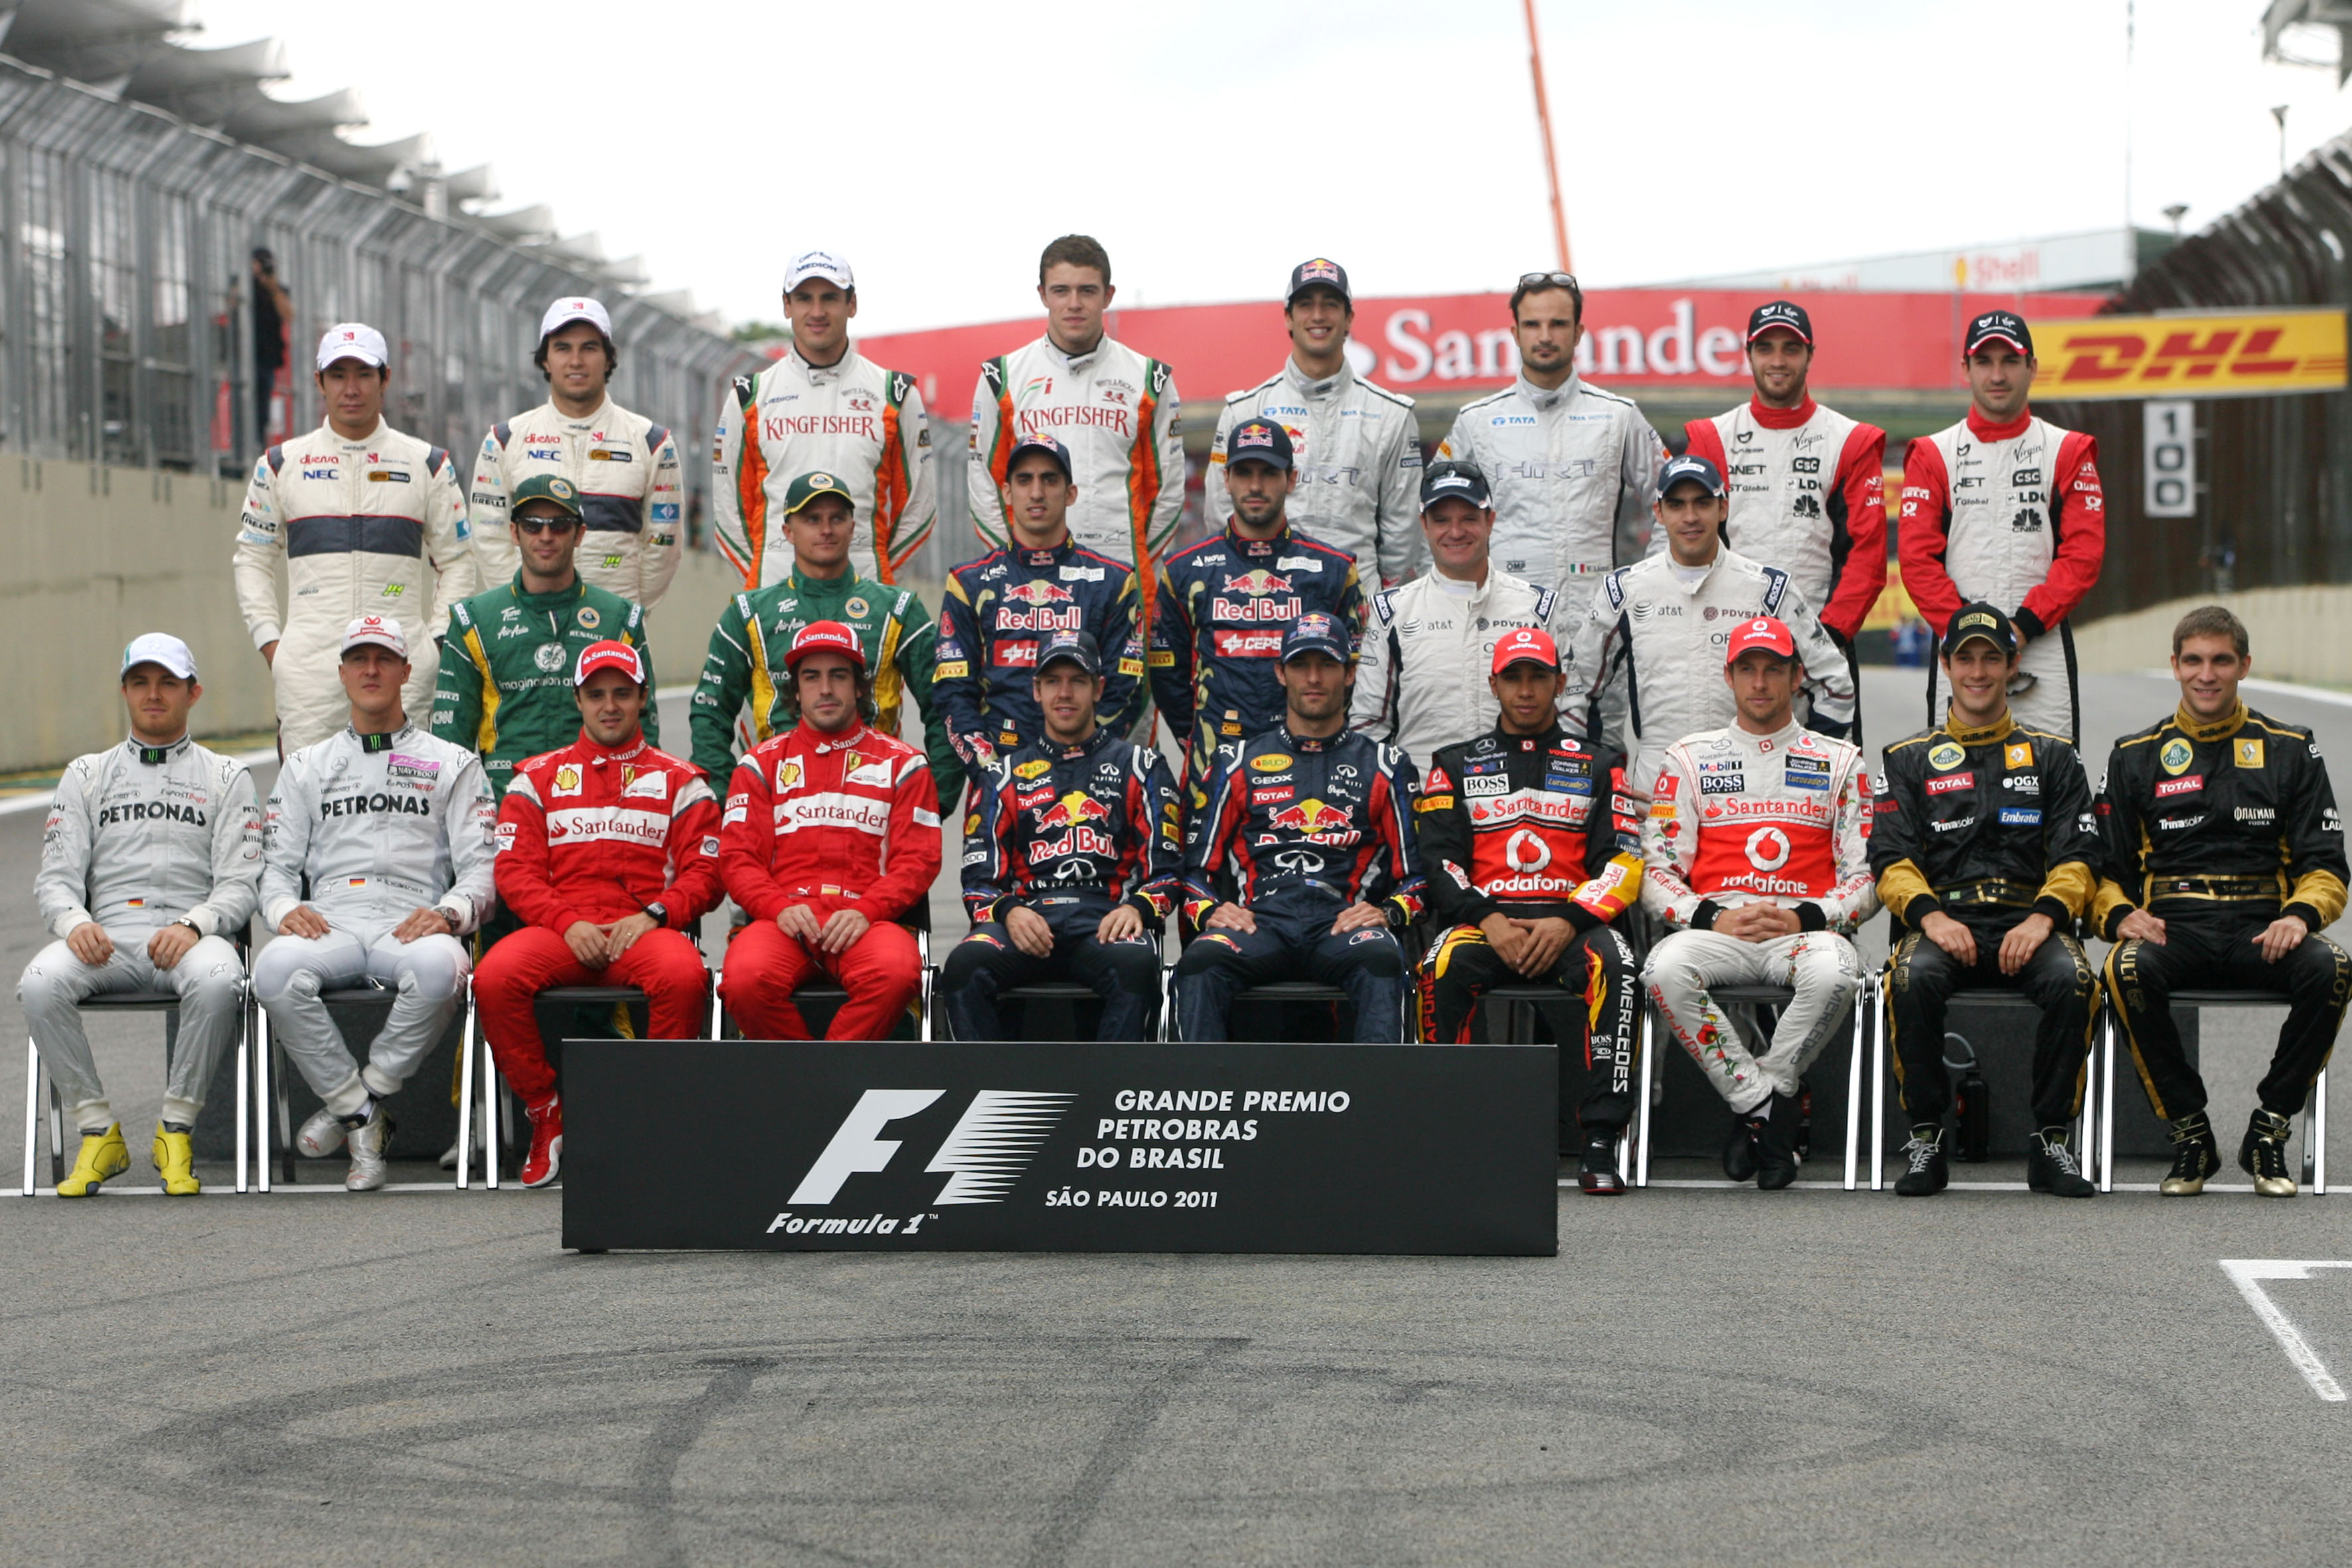 FIA maakt definitieve racekalender voor 2012 bekend